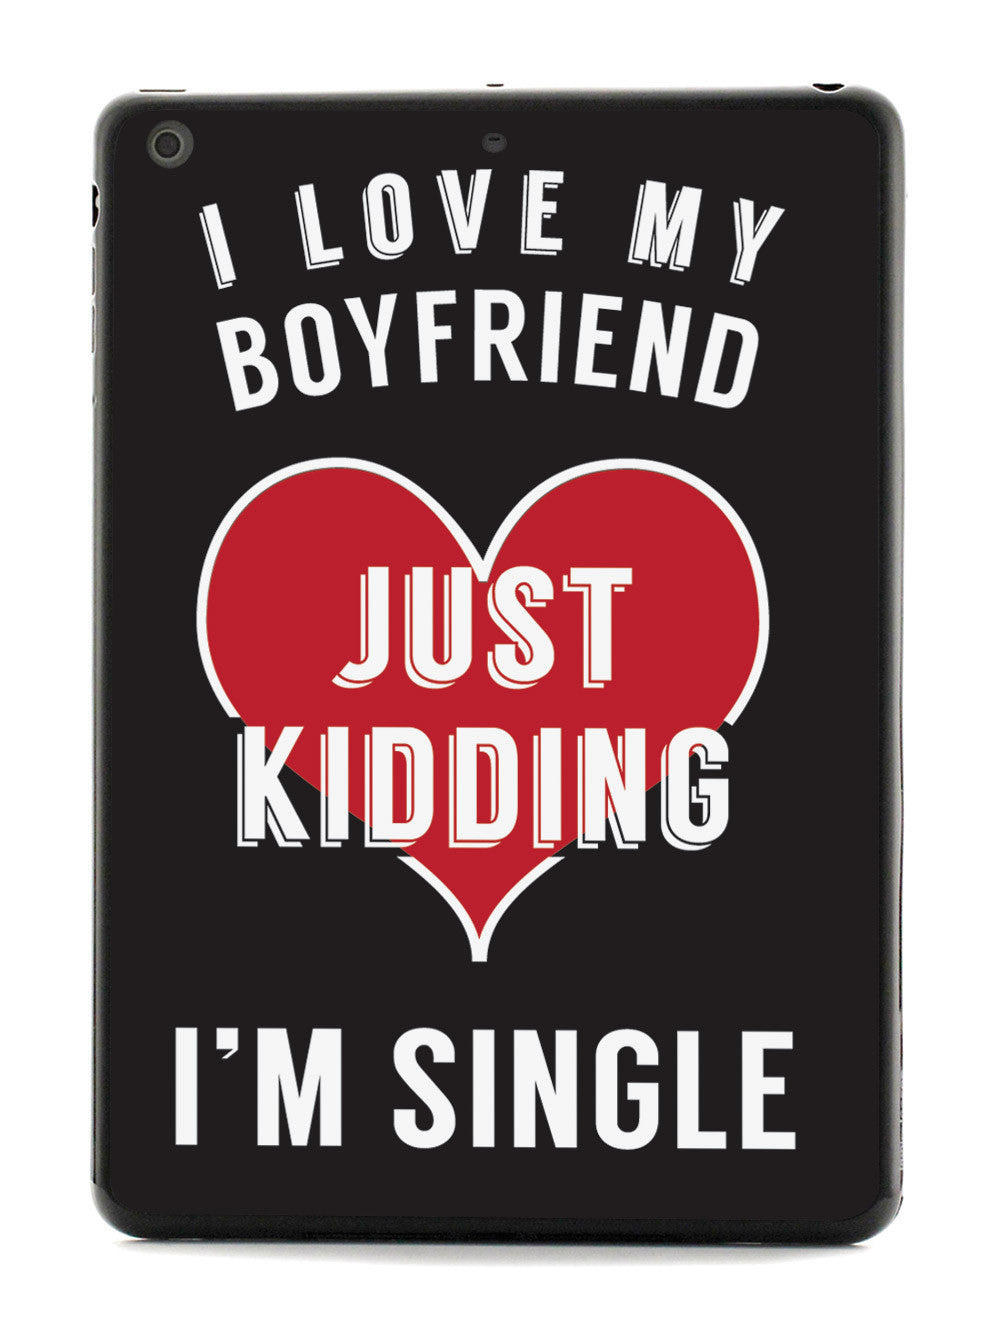 I'm Single Case